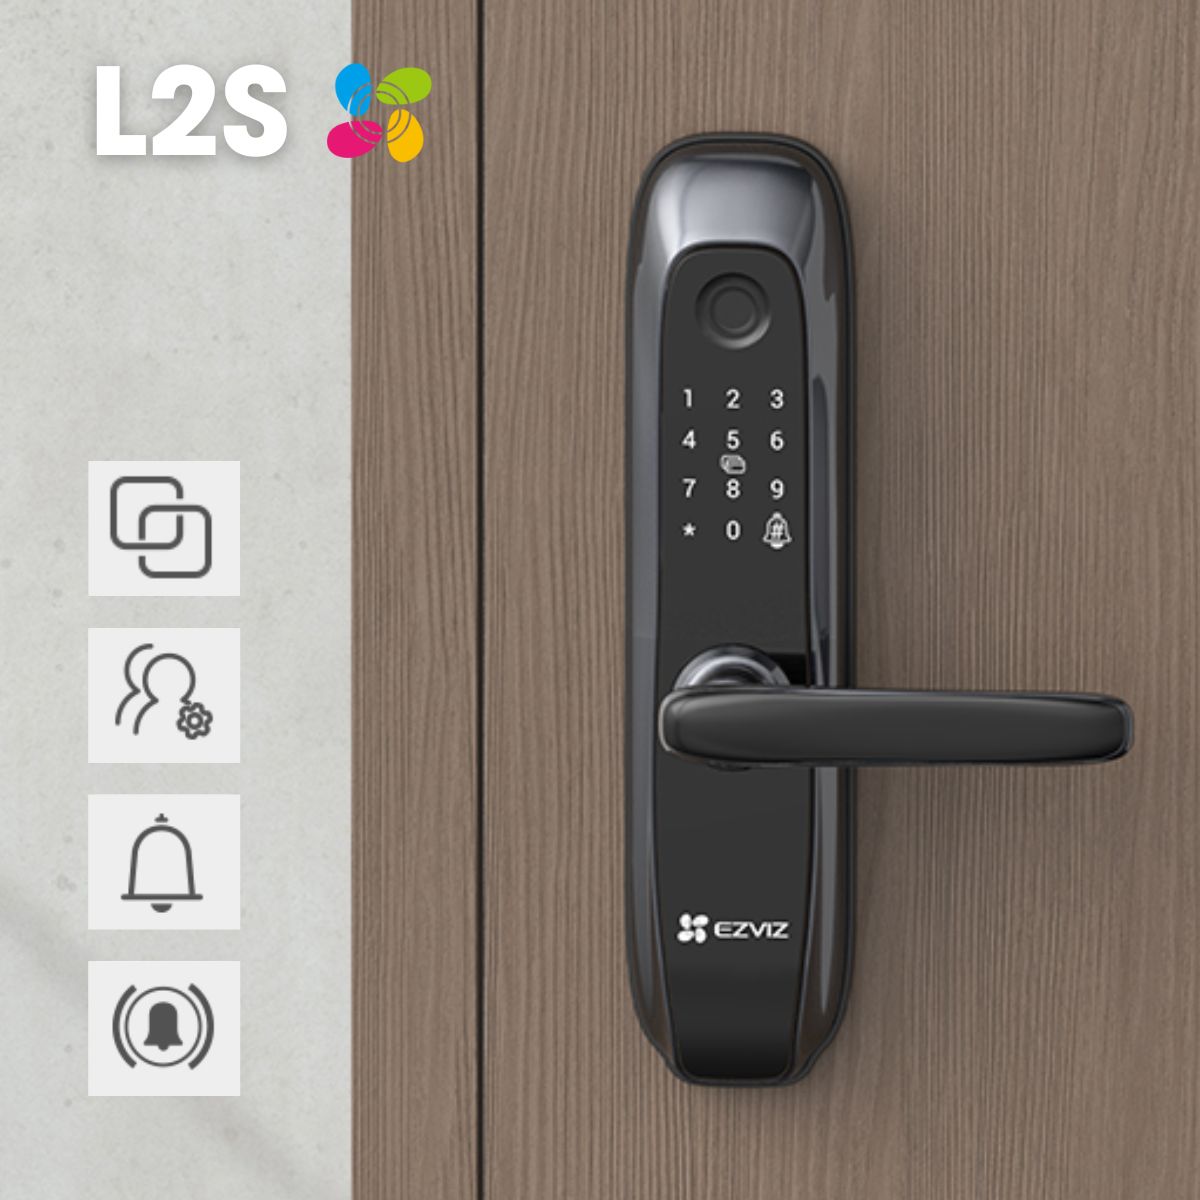 Khoá vân tay Ezviz L2S quản lý bằng app, 4 cách mở cửa, tích hợp chuông cửa, bảo mật 2 lớp, còi báo động